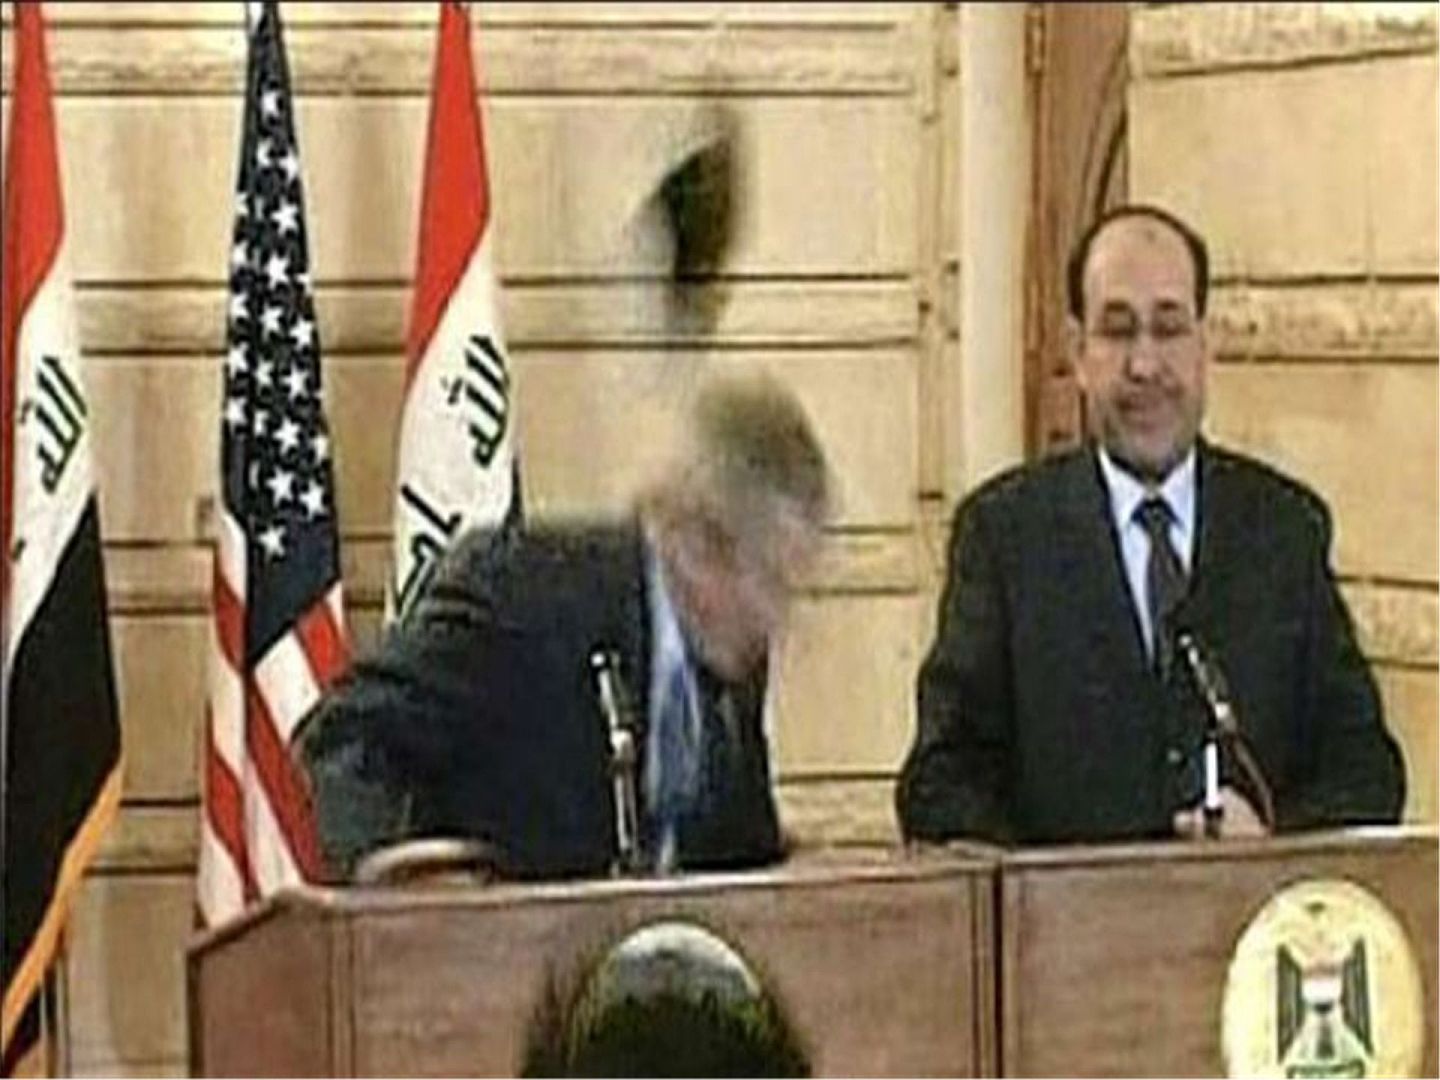 就在小布什准备发言时，一名记者突然脱下自己的鞋子，向小布什砸去。（维基百科公有领域）